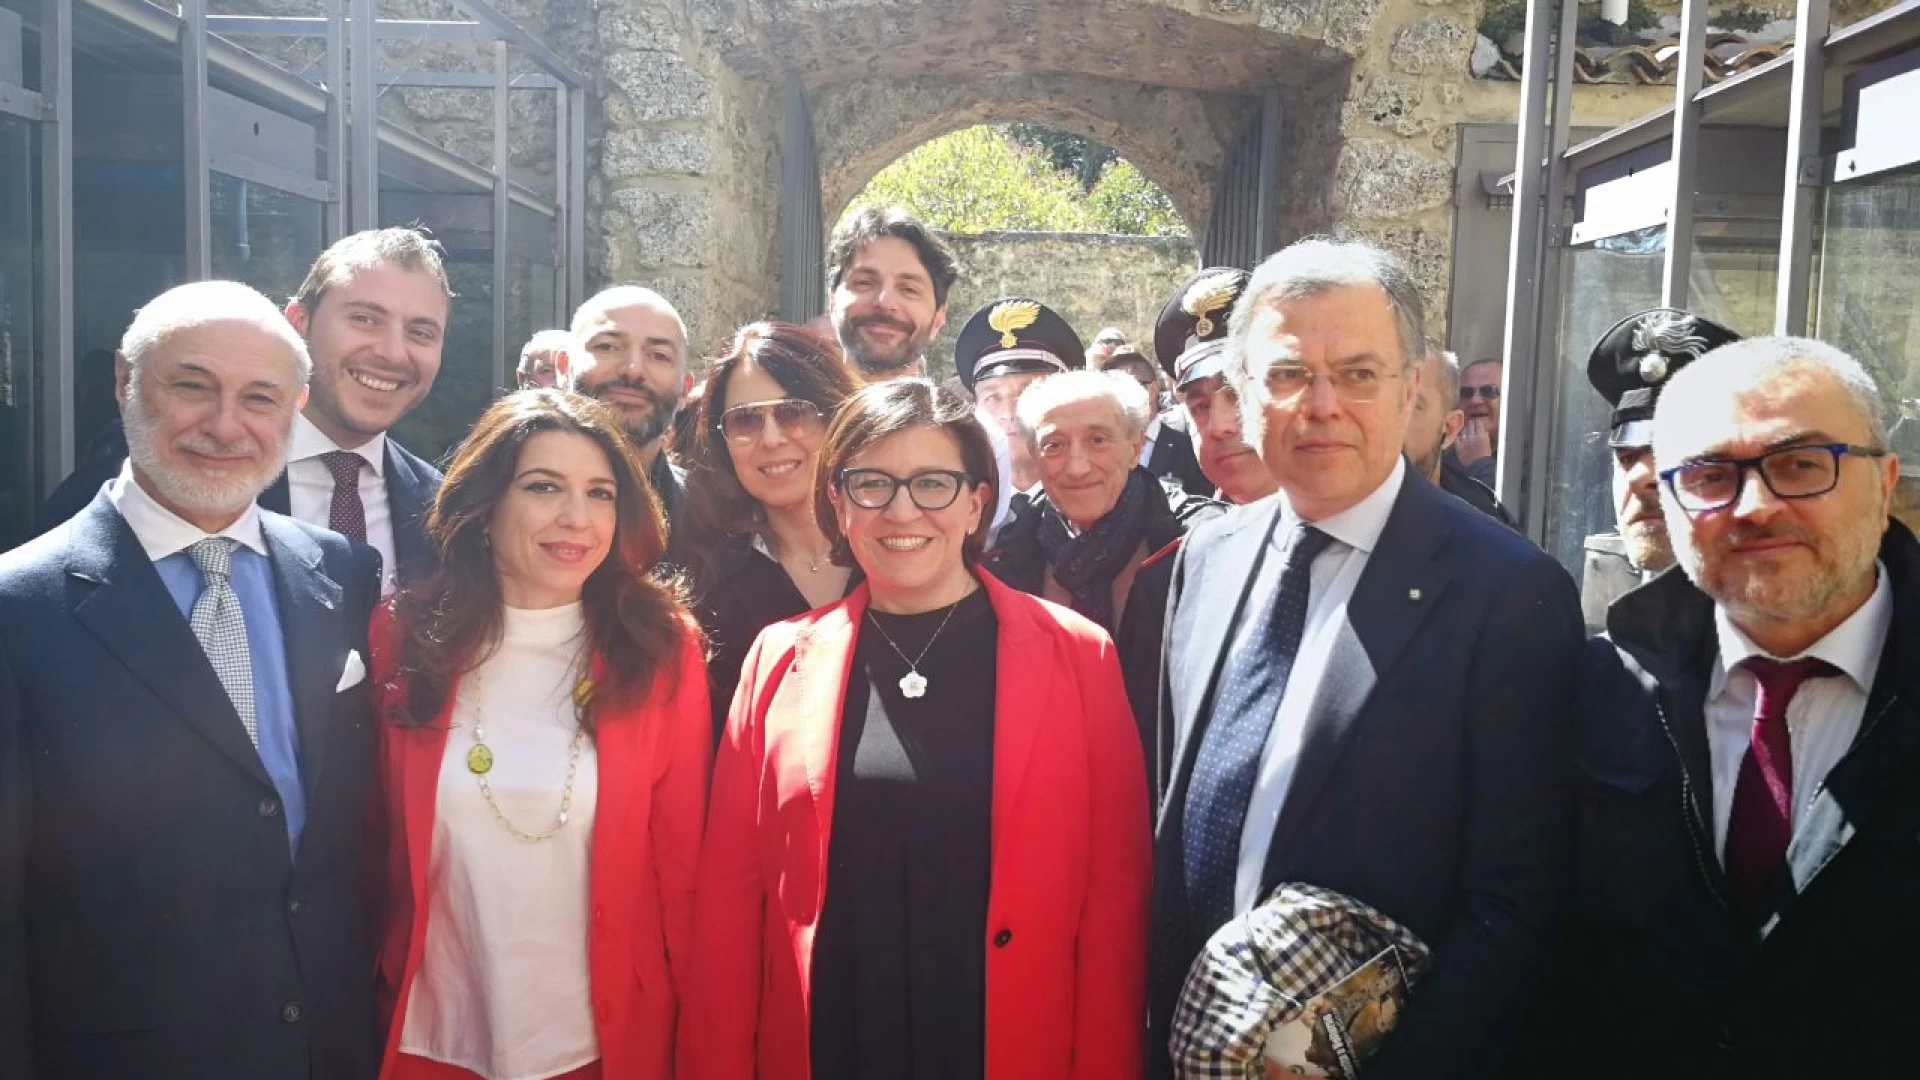 Visita del Ministro Trenta in Molise, il bilancio del senatore Ortis che ha patrocinato l’evento.